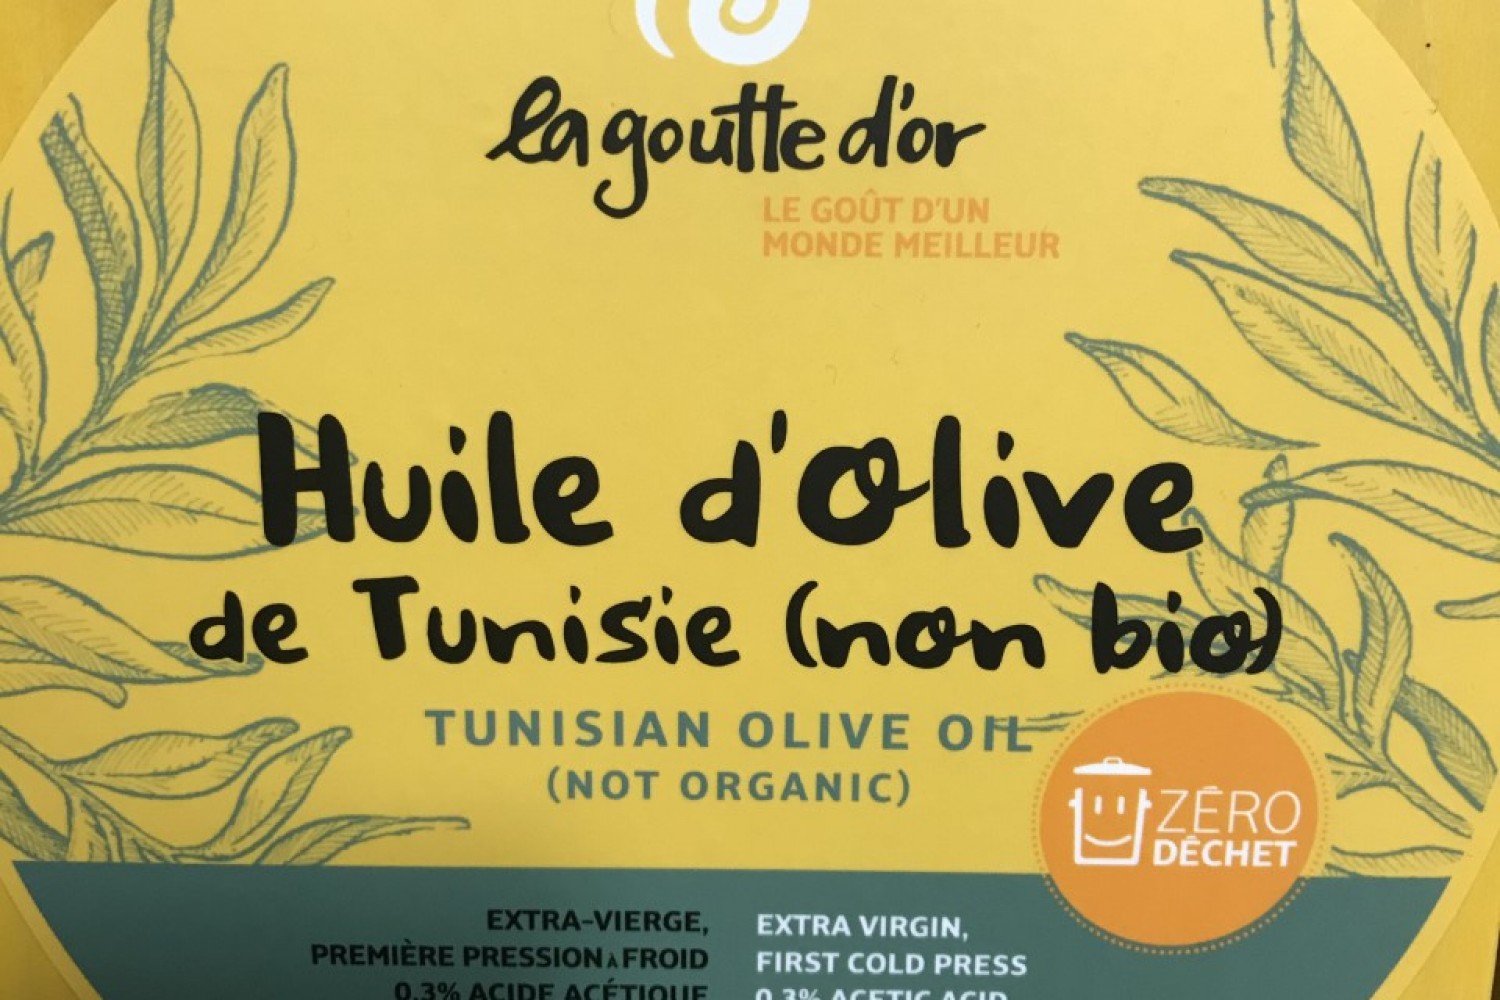 huile-olive-tunisie-la-goutte-or-500ml